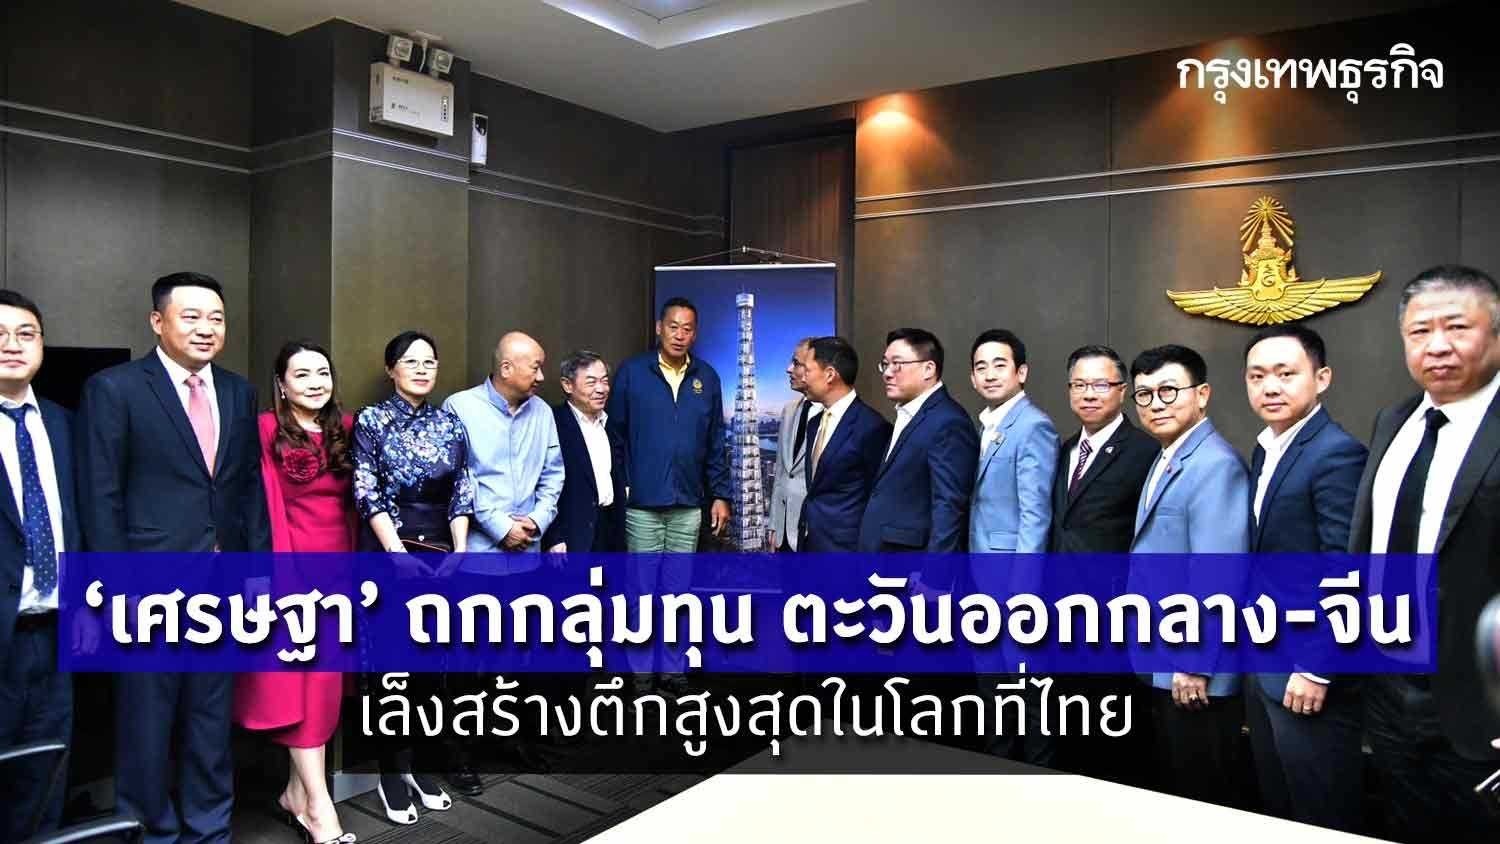 ‘เศรษฐา‘ ถกกลุ่มทุน ตะวันออกกลาง- จีน เล็งสร้างตึกสูงสุดในโลกที่ไทย